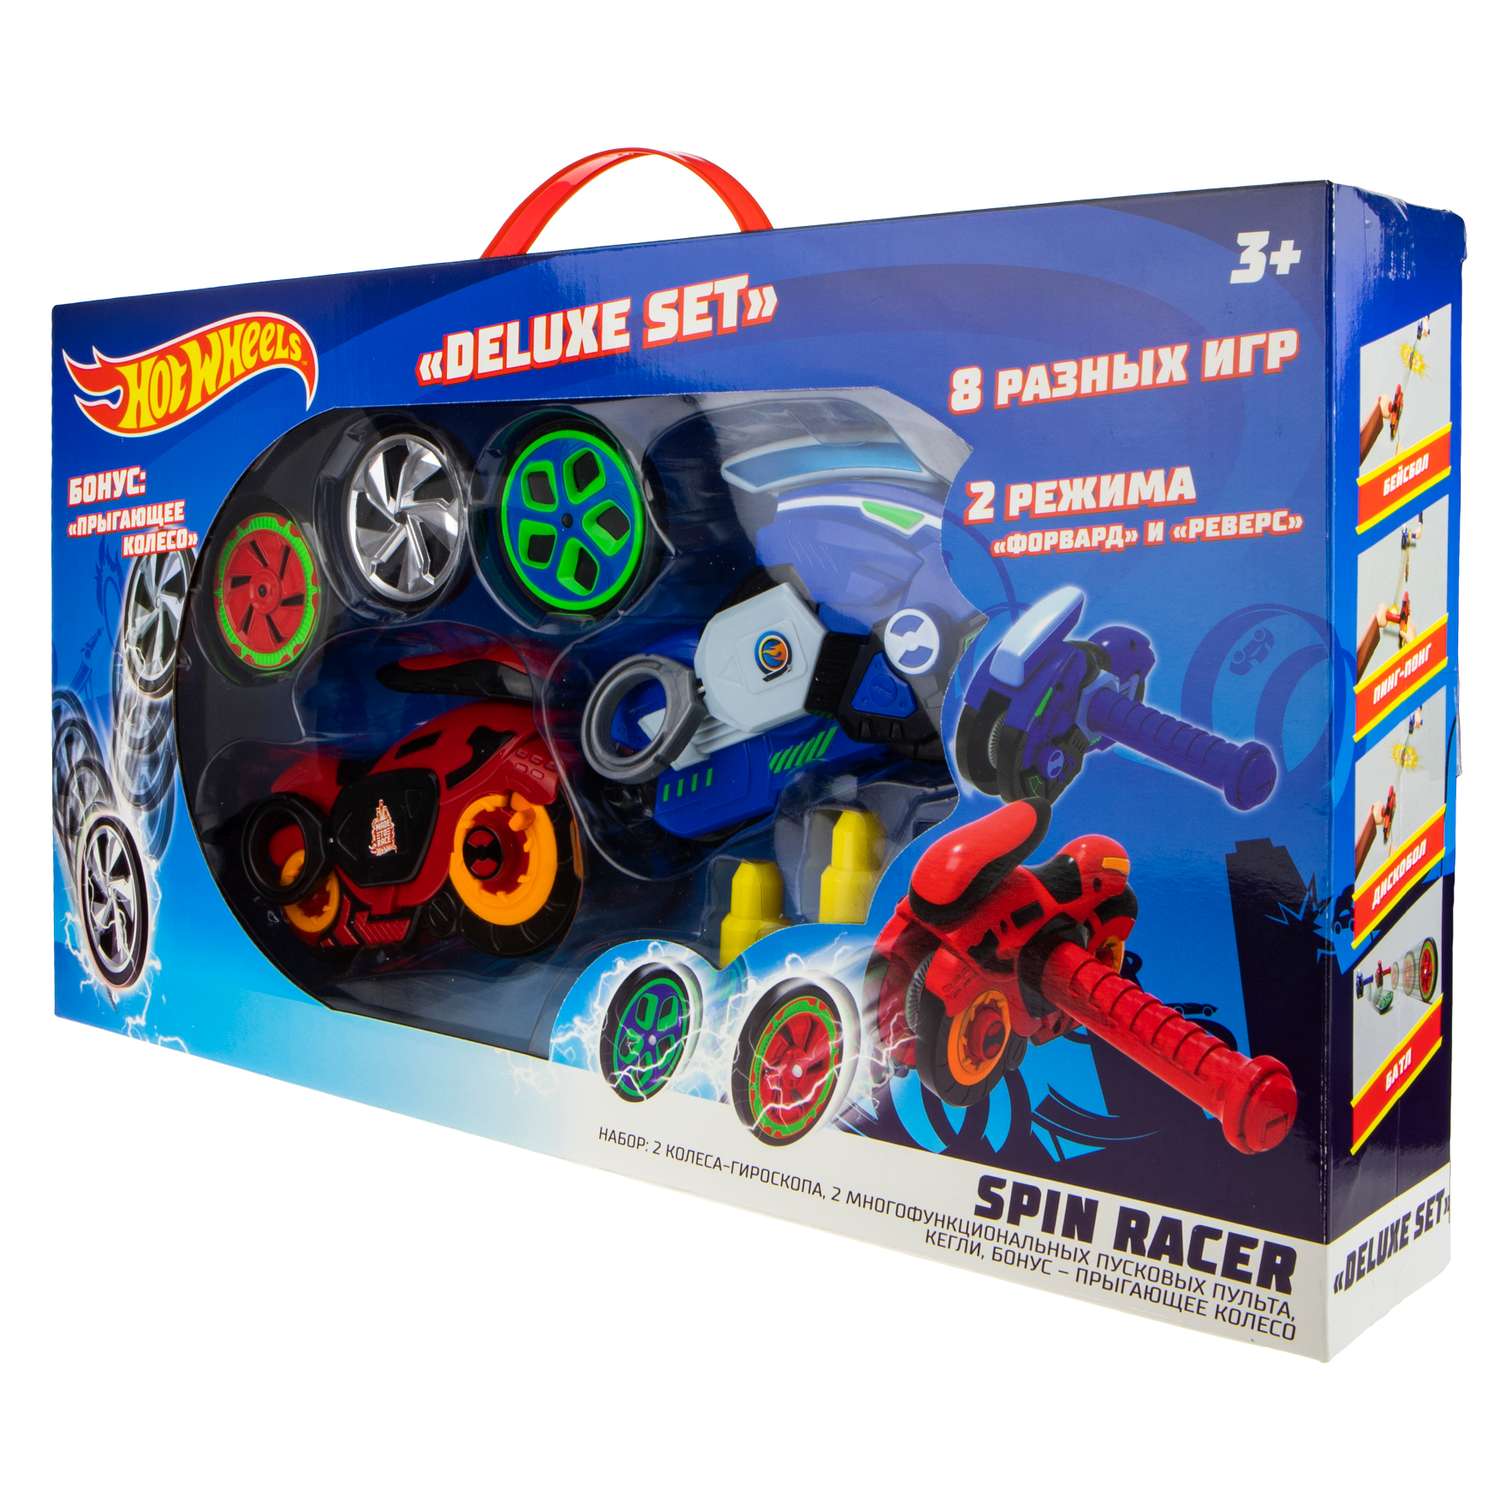 Игровой набор Hot Wheels Spin Racer Deluxe Set 2 игрушечных мотоцикла с колесами-гироскопами Т19375 - фото 16